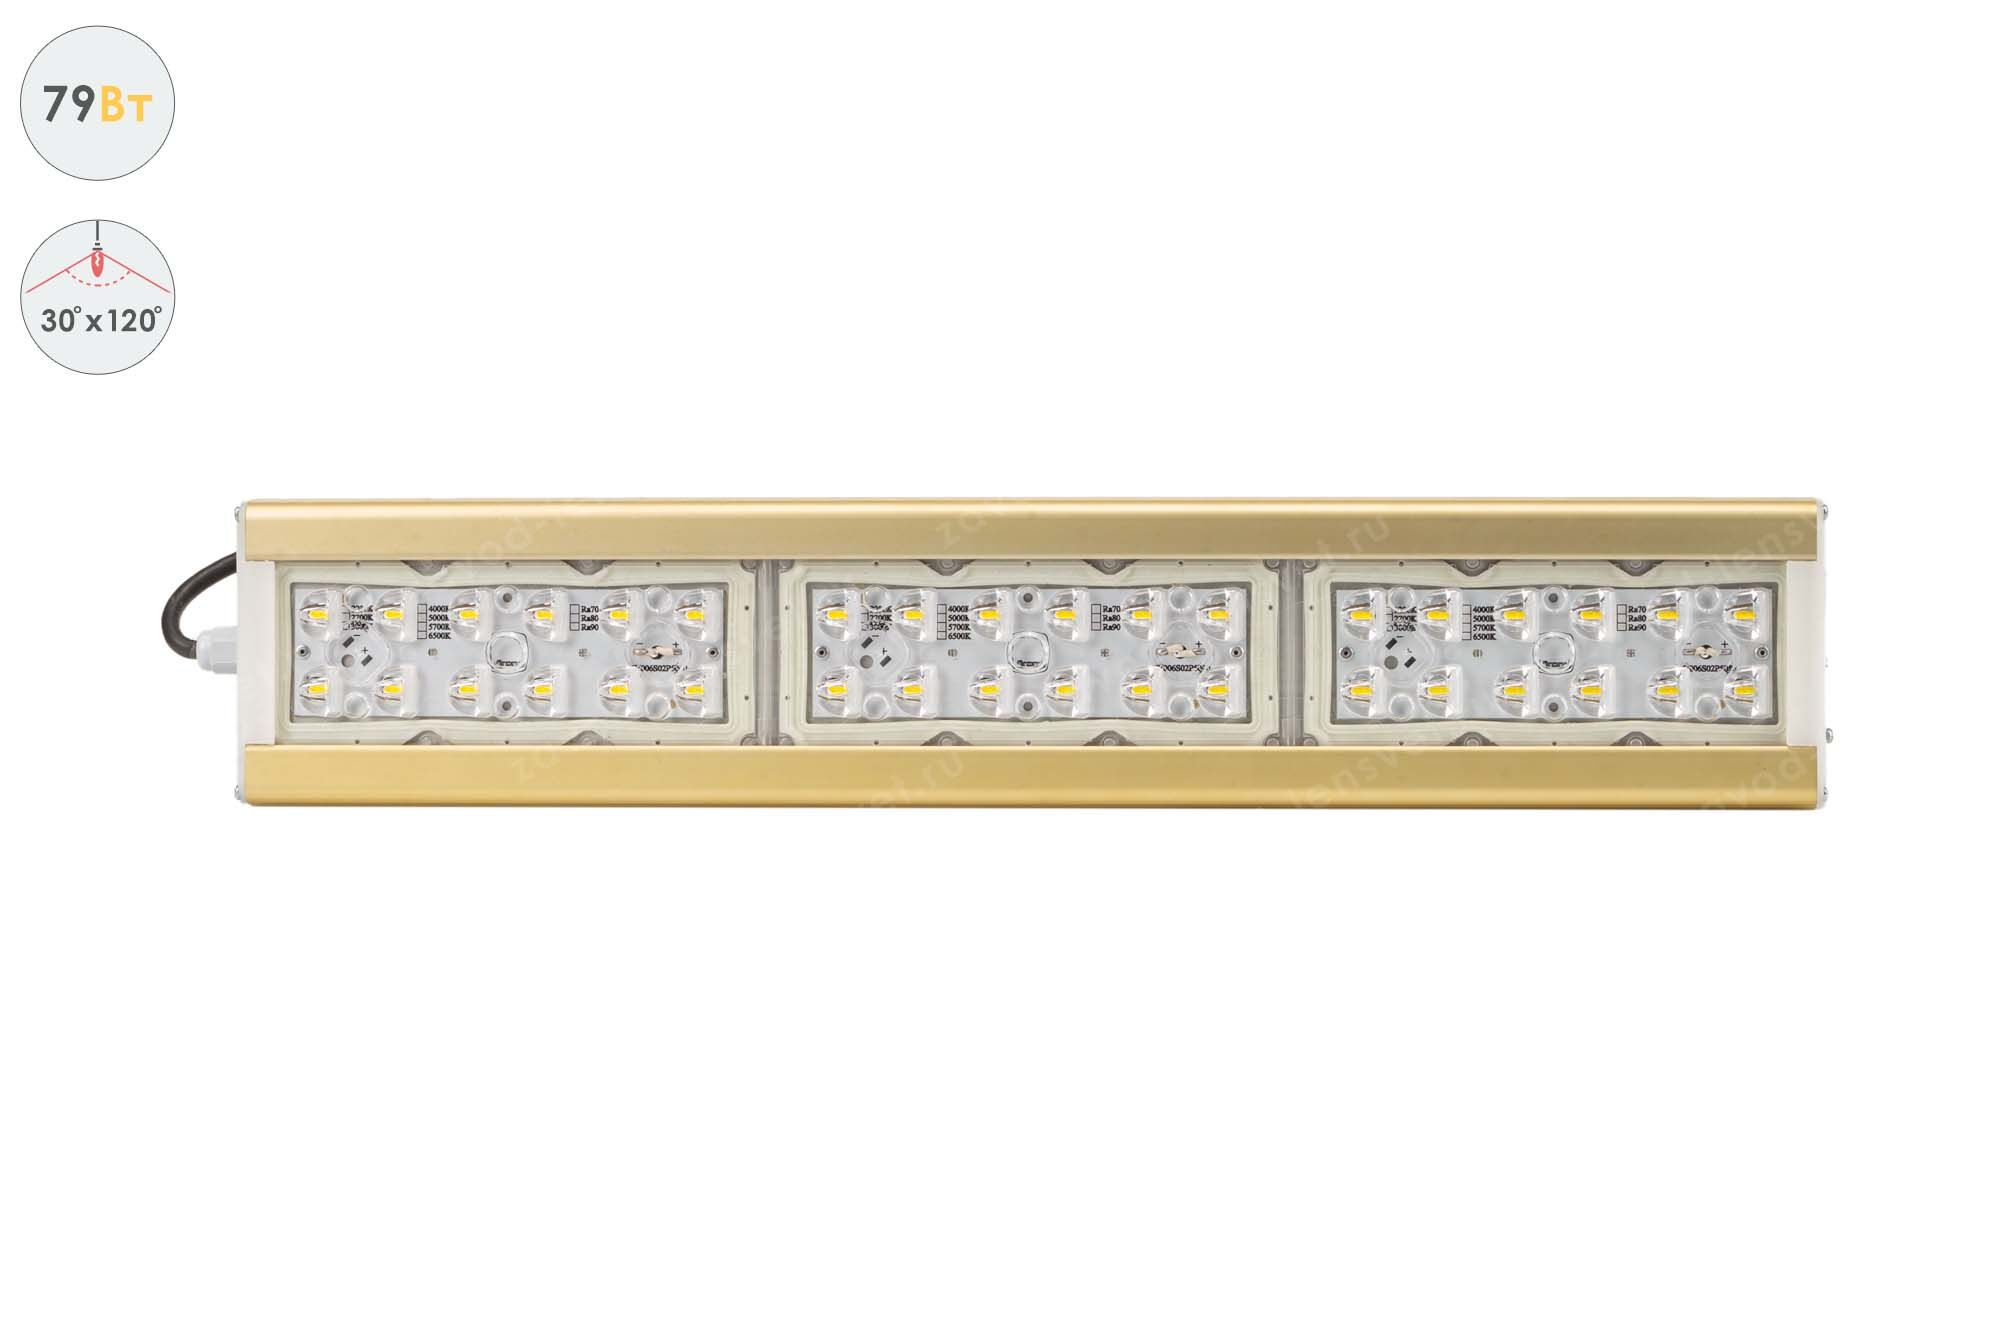 Светодиодный светильник Магистраль GOLD, консоль K-1, 79 Вт, 30X120°